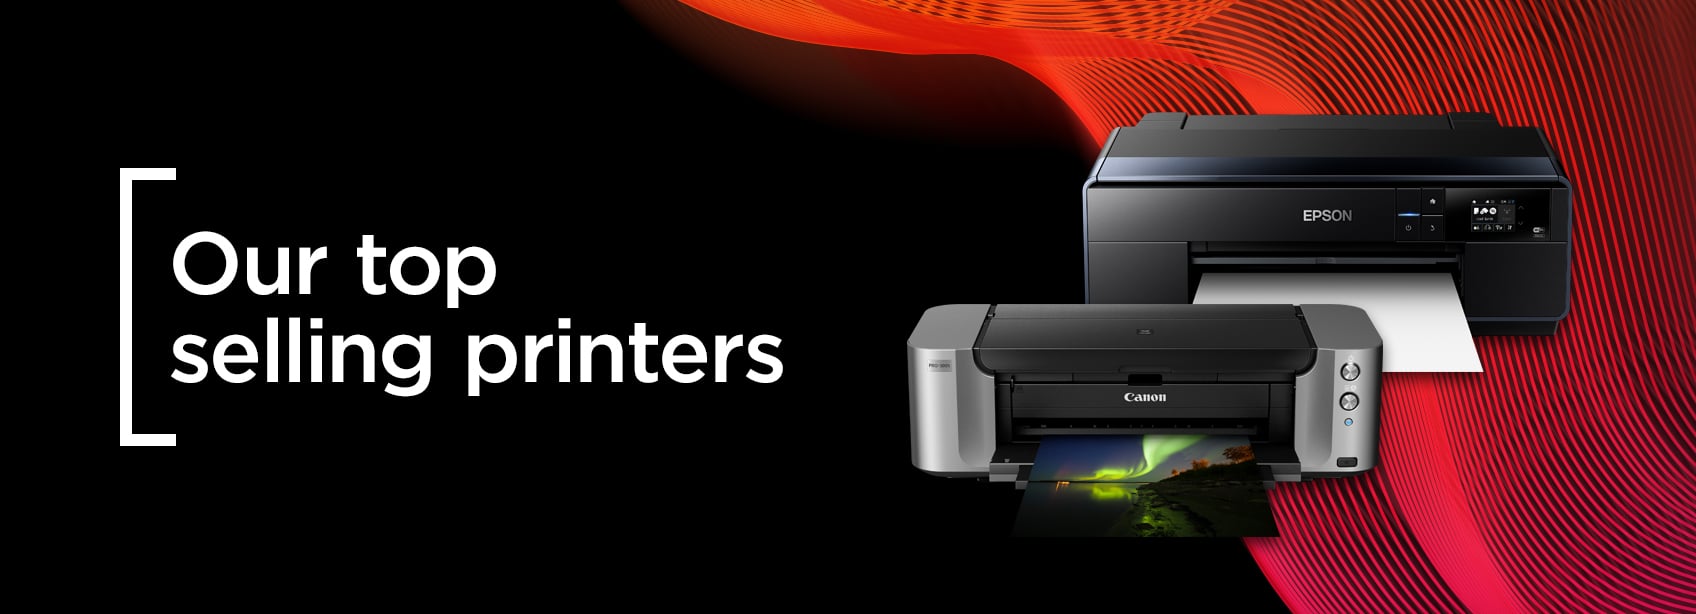 Wex-Printers-H-220420.jpg